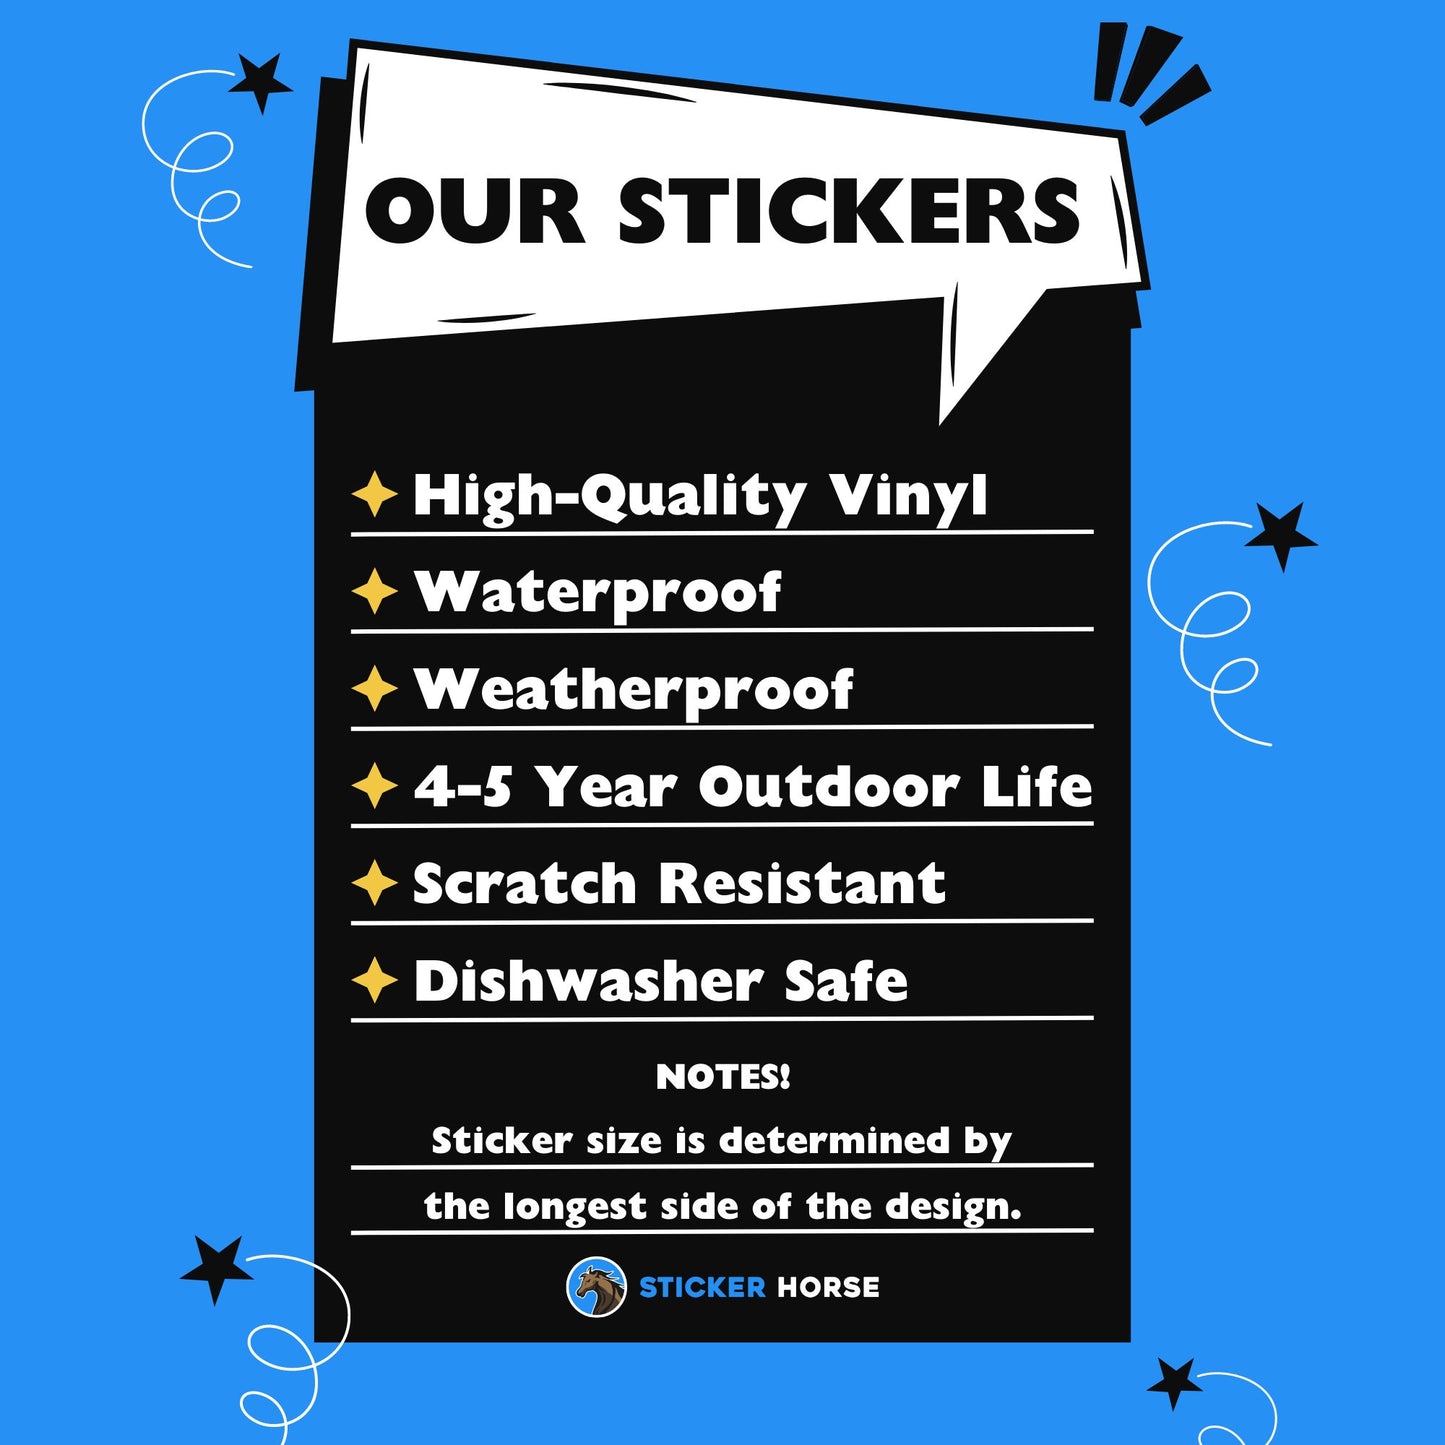 Get In Loser Sticker, Cow Abduction Sticker, UFO Aliens Inspired Sticker, Cute Sticker, Waterproof Sticker